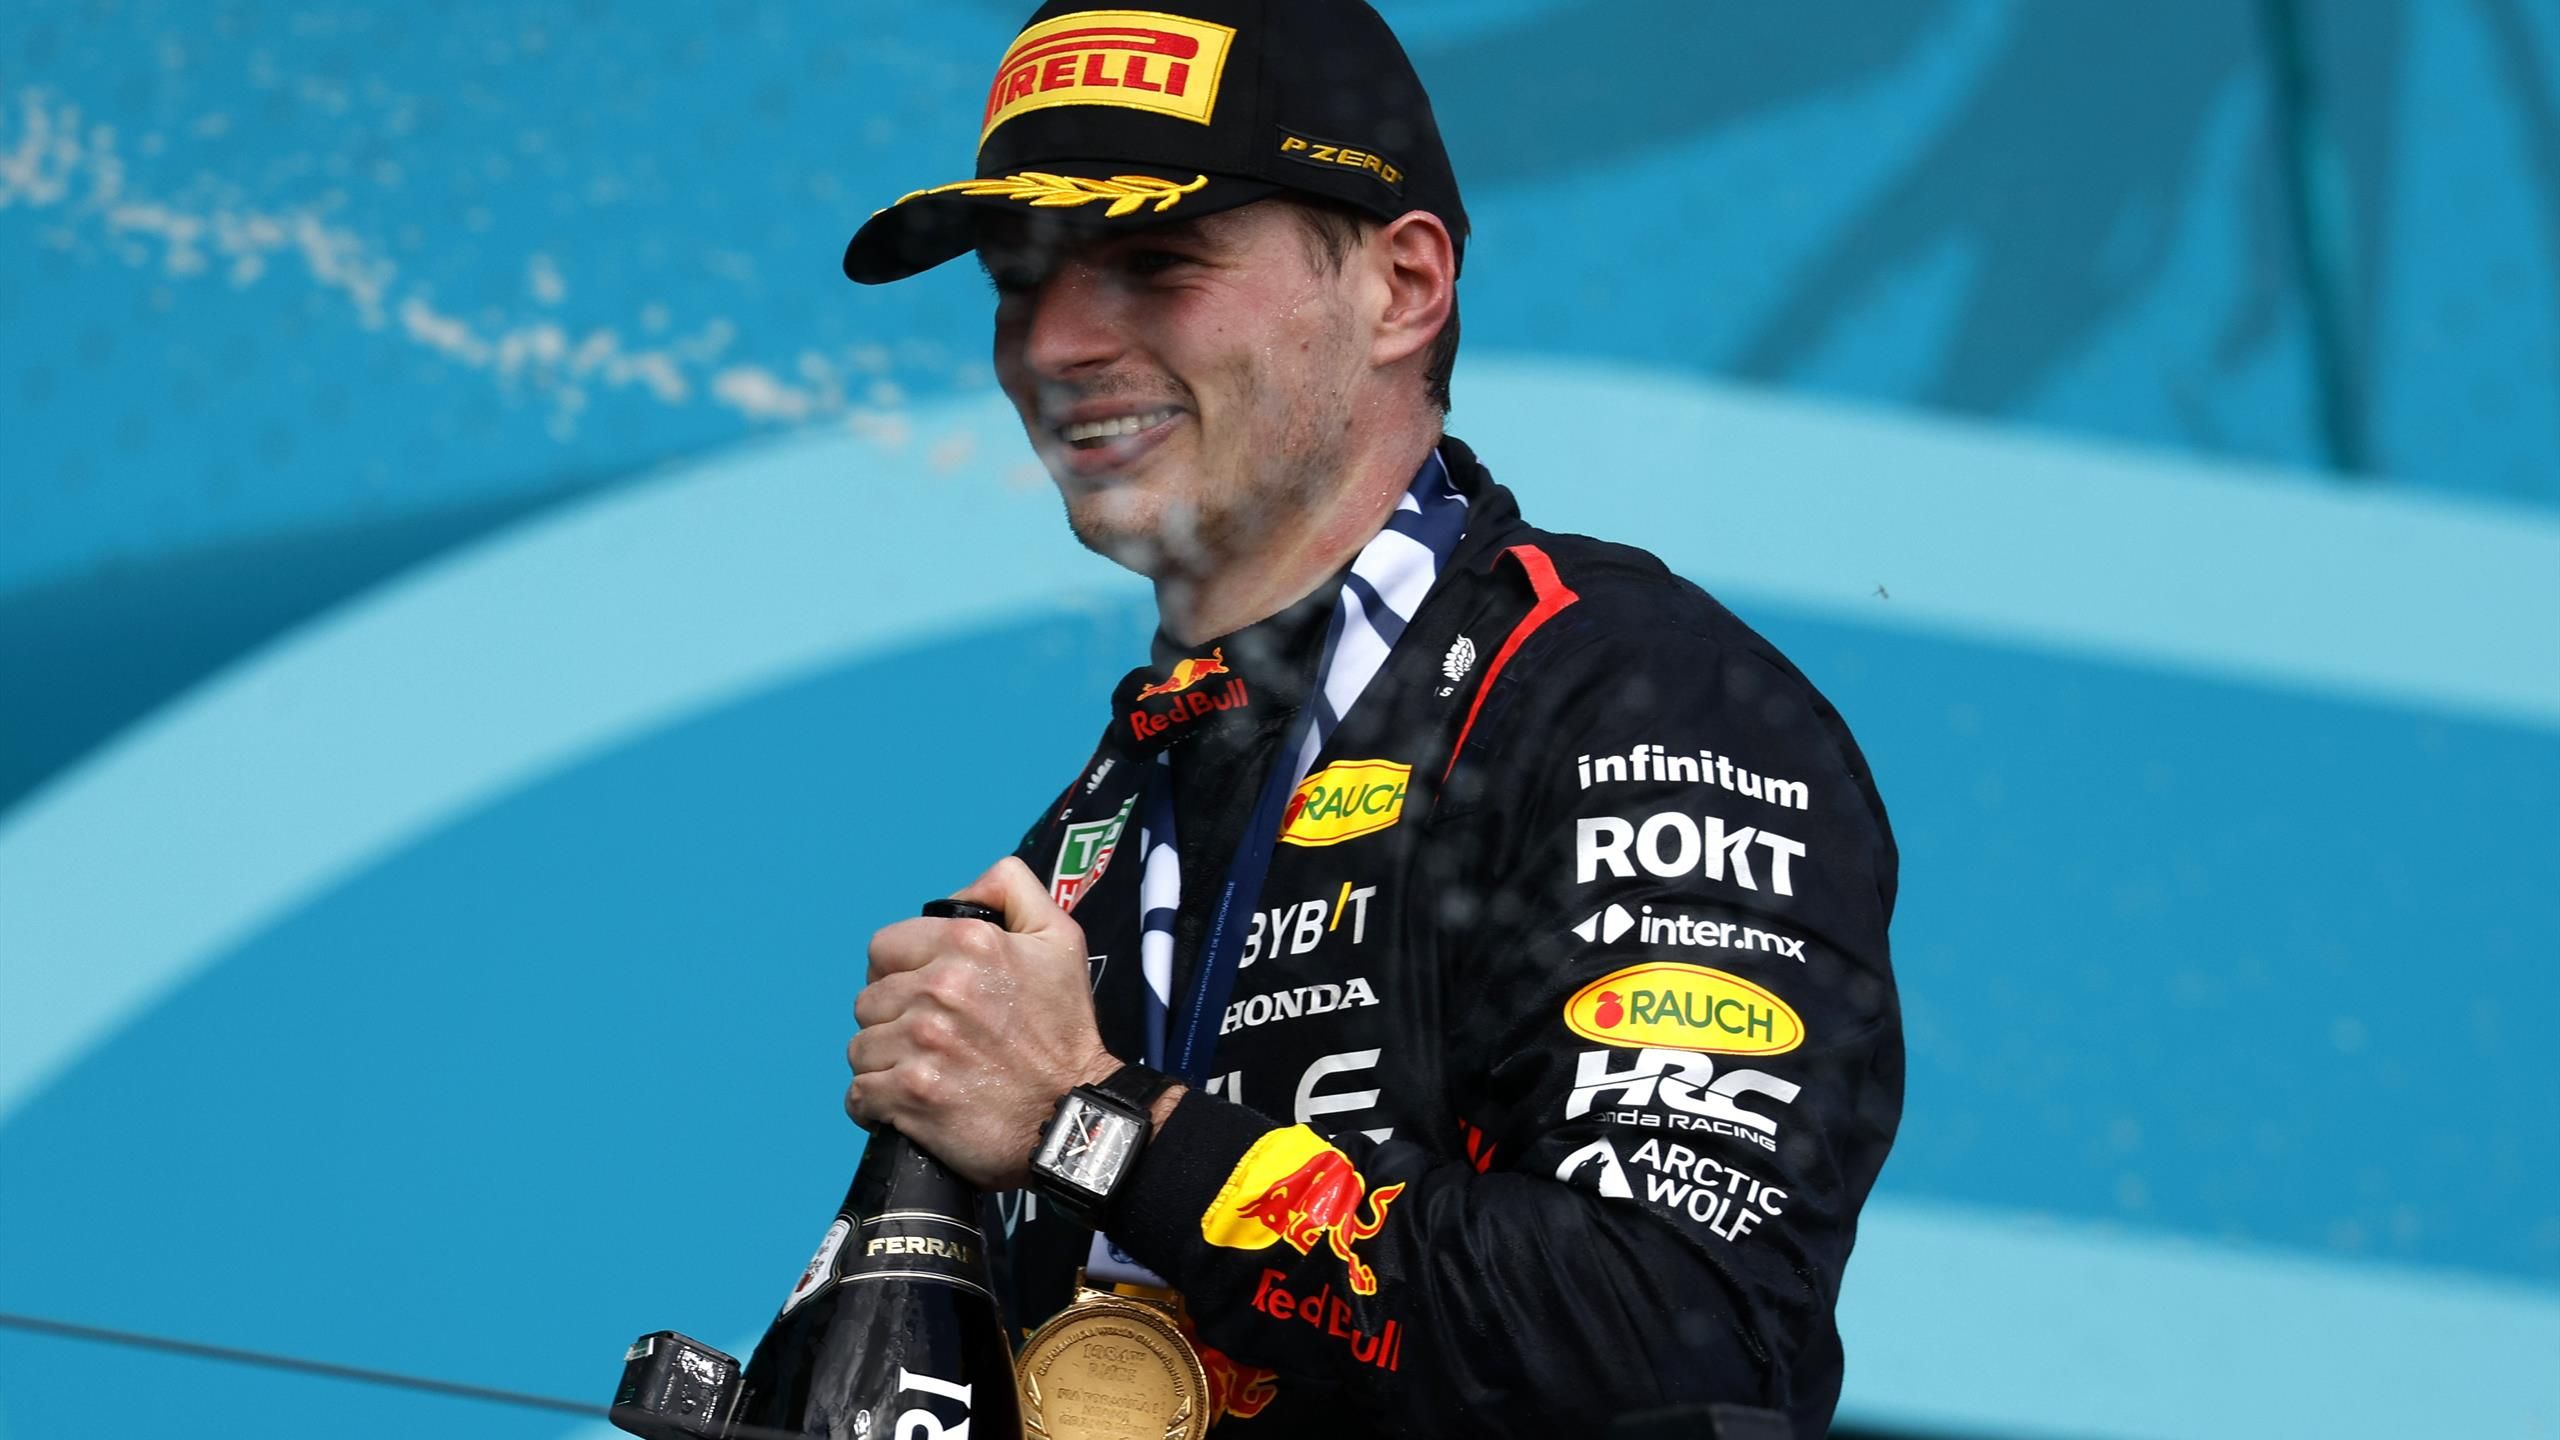 F1 | Max Verstappen reageert boegeroep publiek in Miami - “Het hoort erbij” - Eurosport